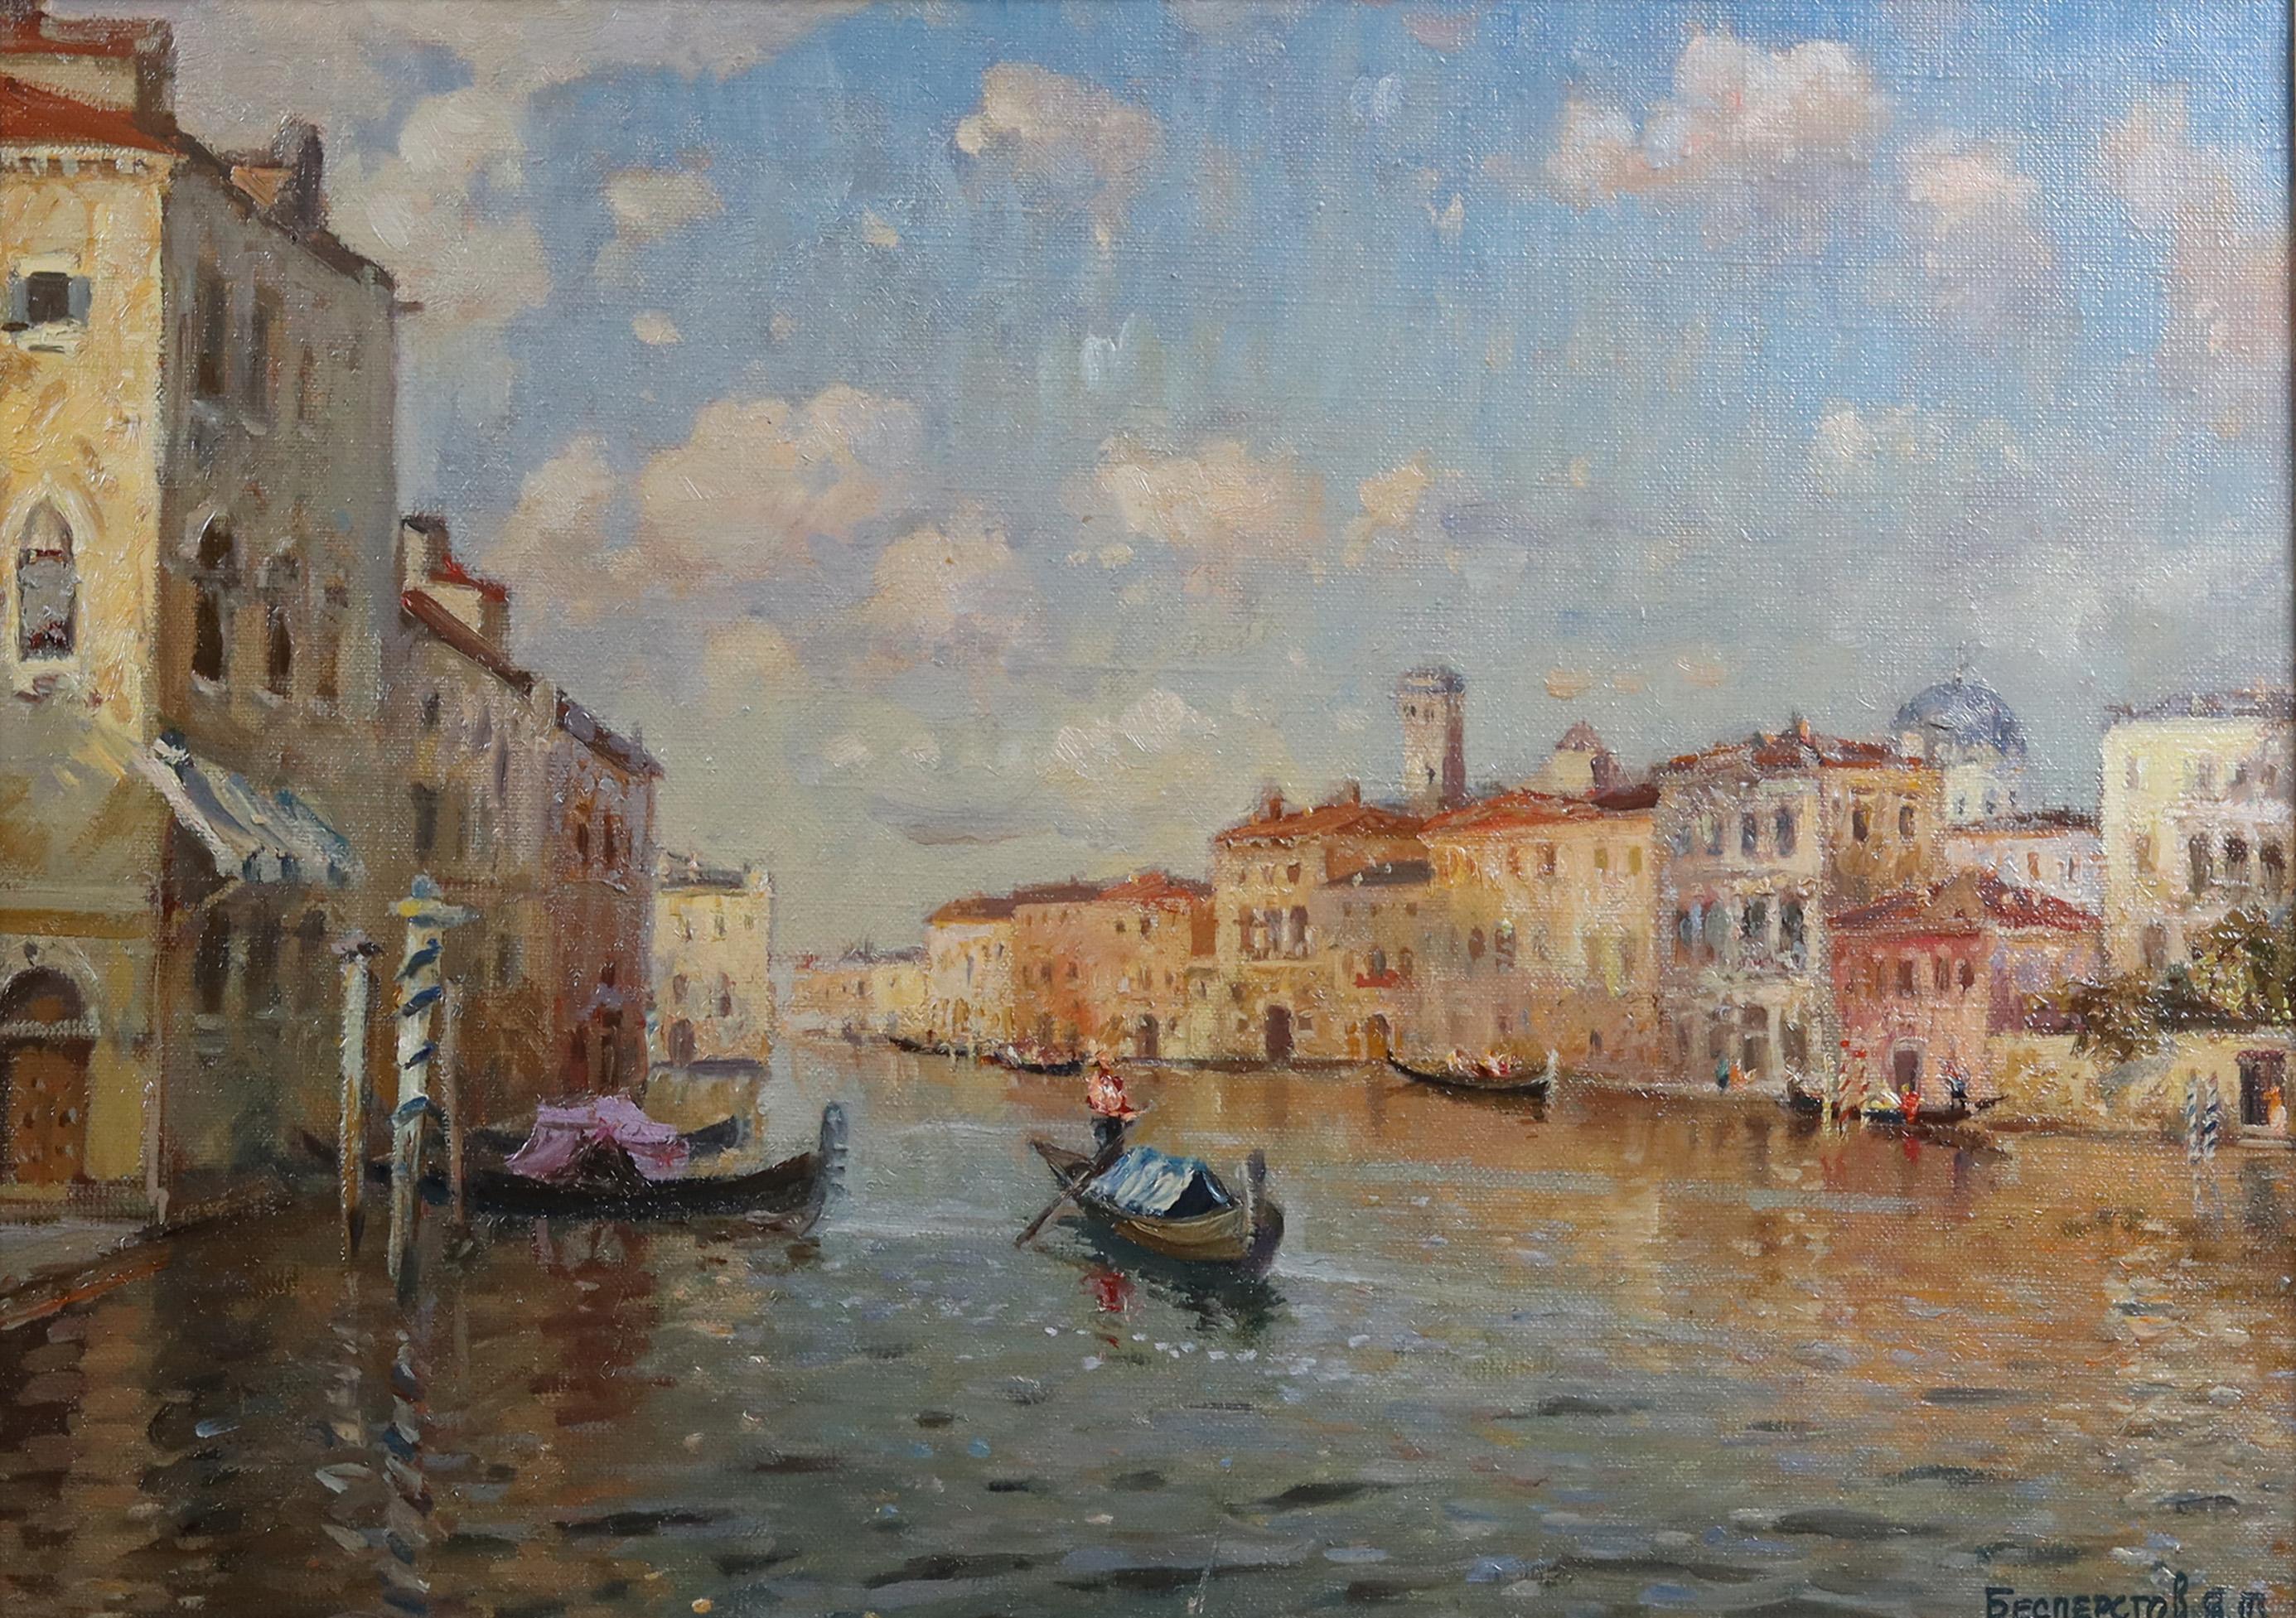  A Venetian Canal Scene